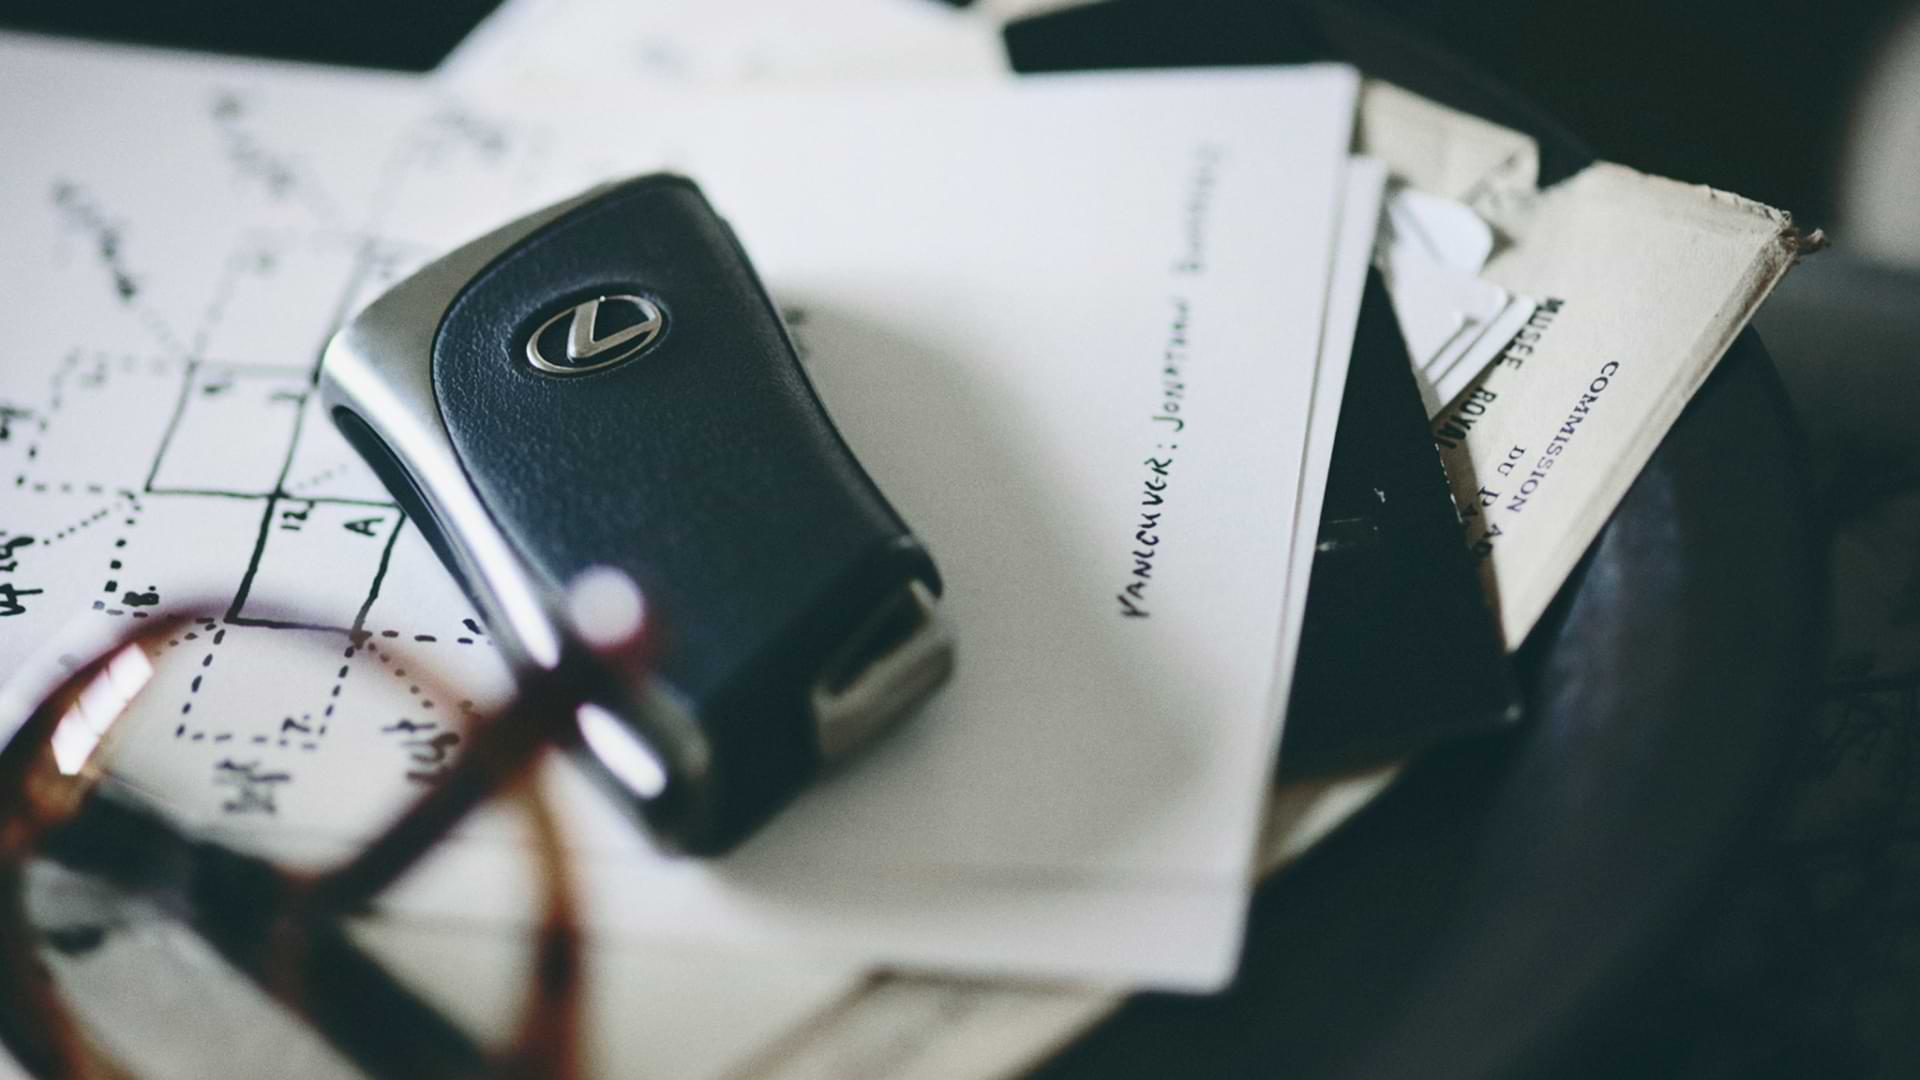 Lexus keys on paperwork